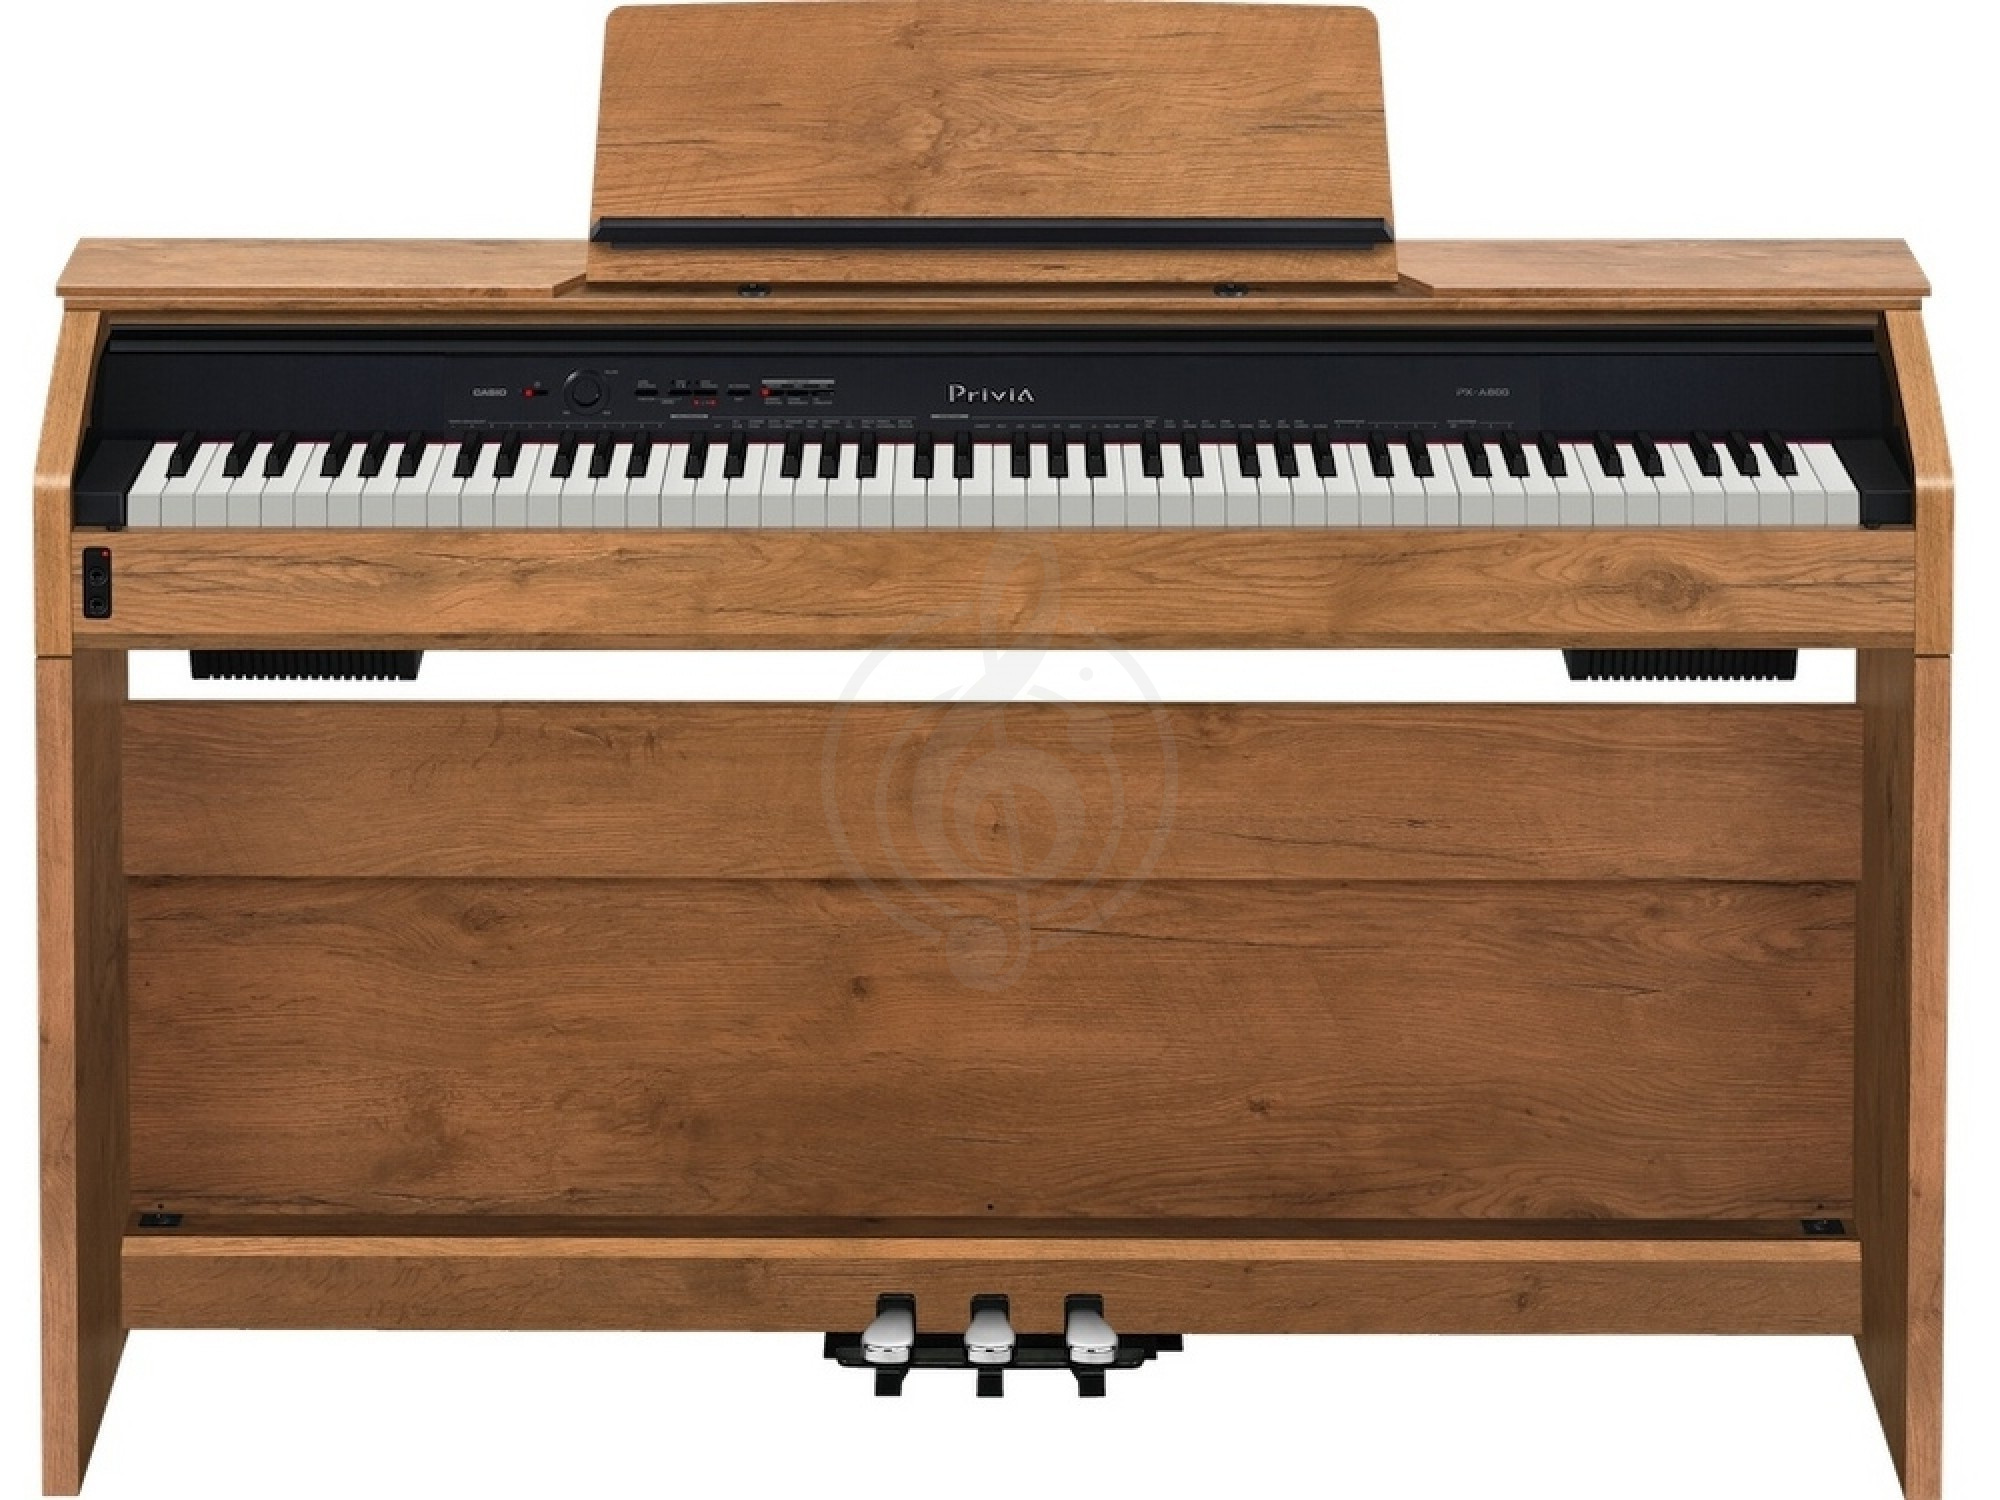 Цифровое пианино Цифровые пианино Casio Casio Privia PX-A800BN, цифровое пианино PX-A800BN - фото 1